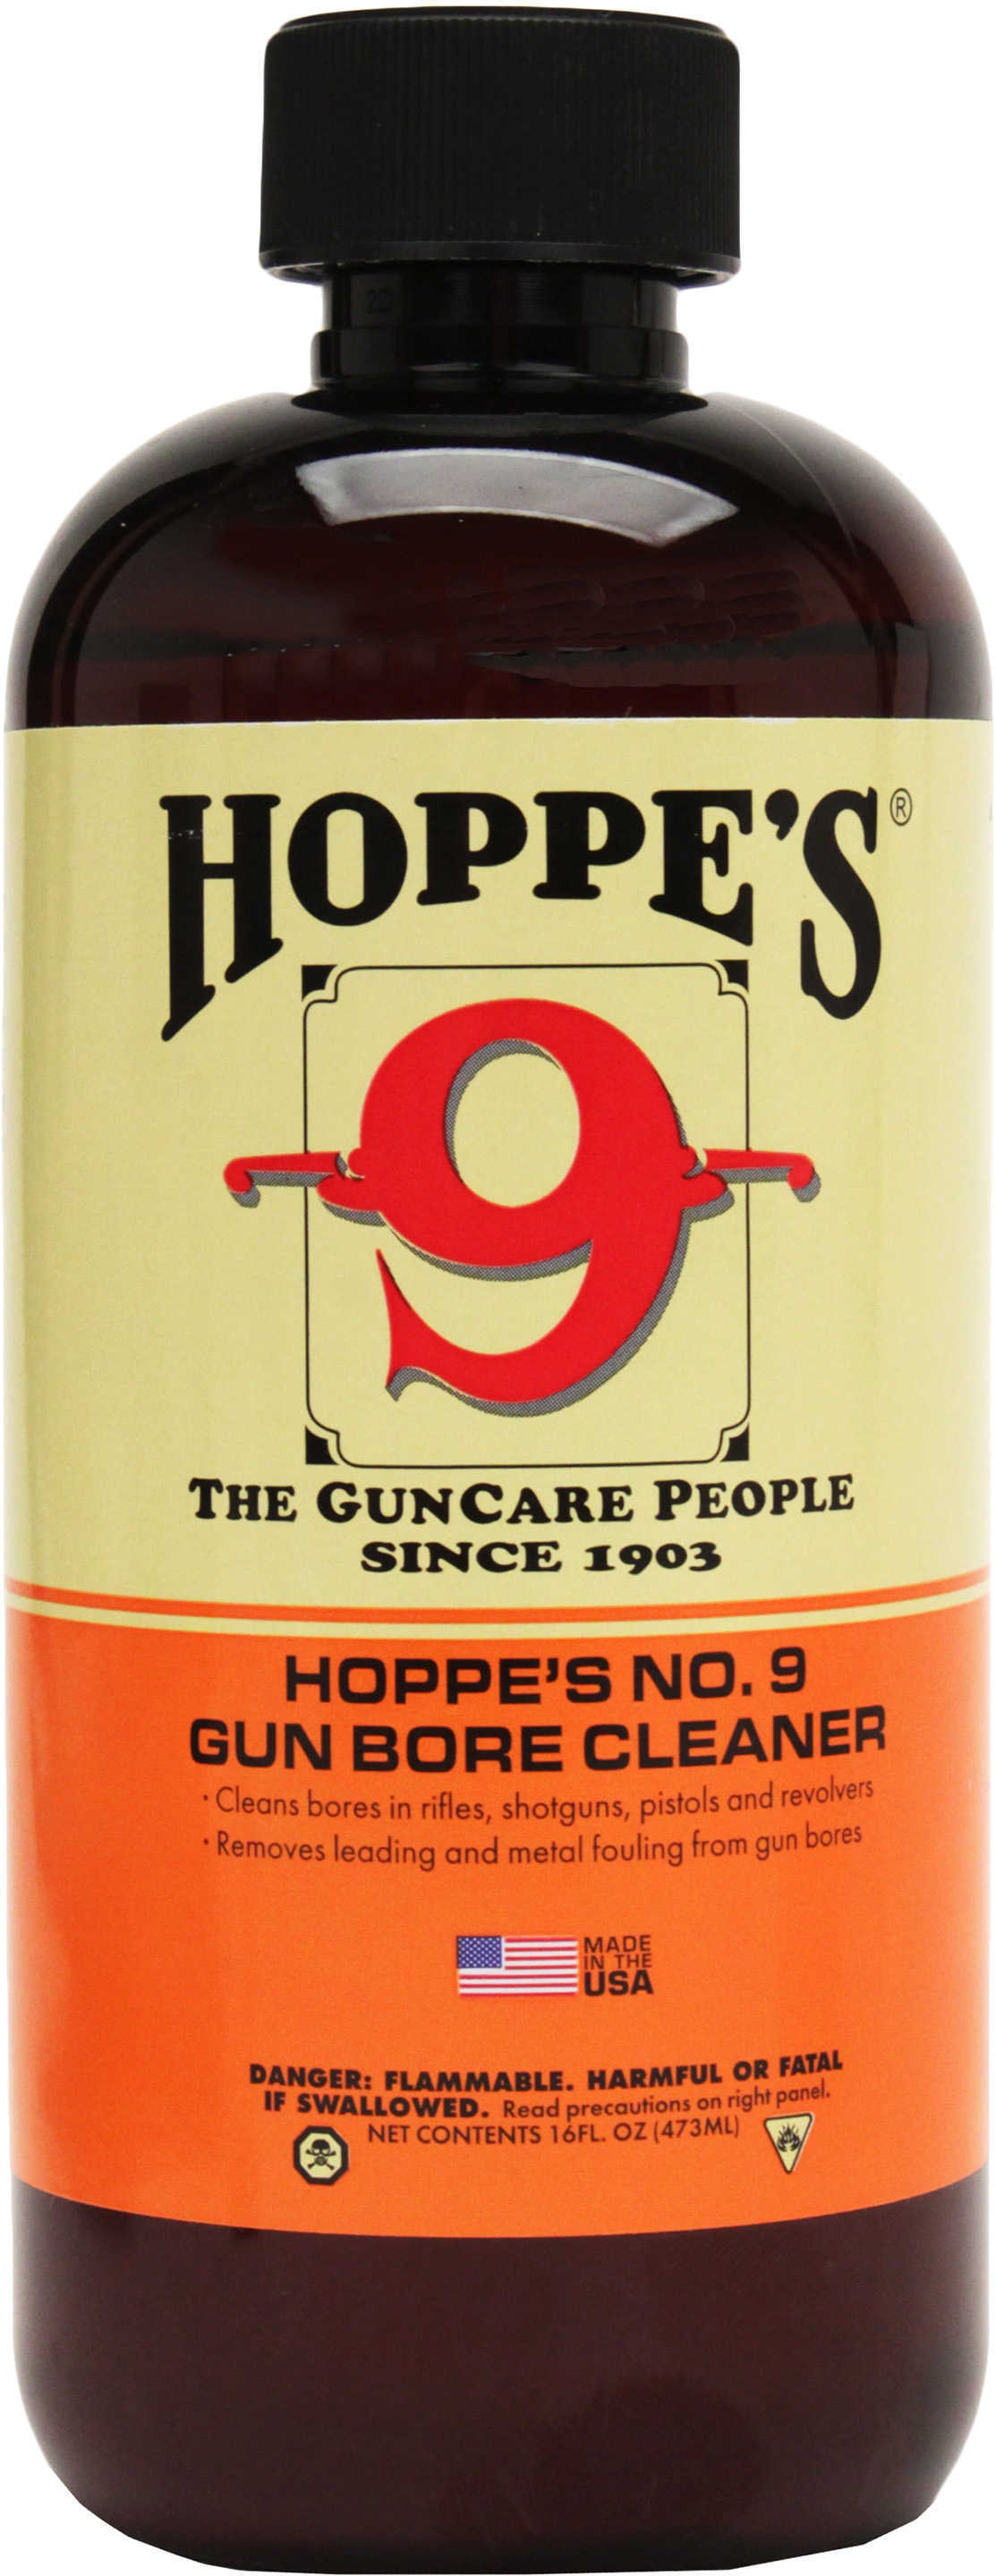 Hoppes #9 Nitro Powder Solvent 10 Pk Md: 916